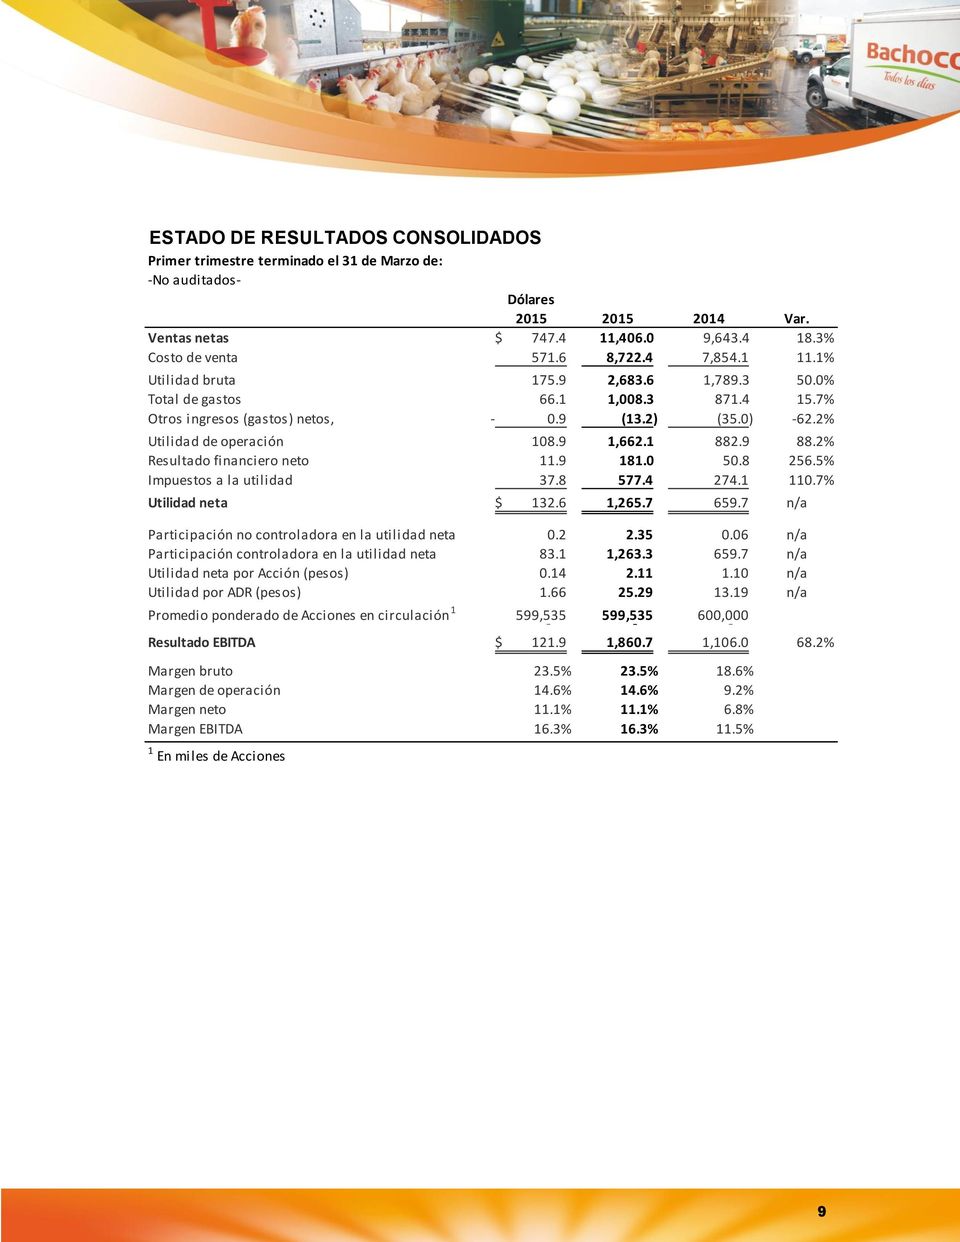 9 88.2% Resultado financiero neto 11.9 181.0 50.8 256.5% Impuestos a la utilidad 37.8 577.4 274.1 110.7% Utilidad neta $ 132.6 1,265.7 659.7 n/a Participación no controladora en la utilidad neta 0.